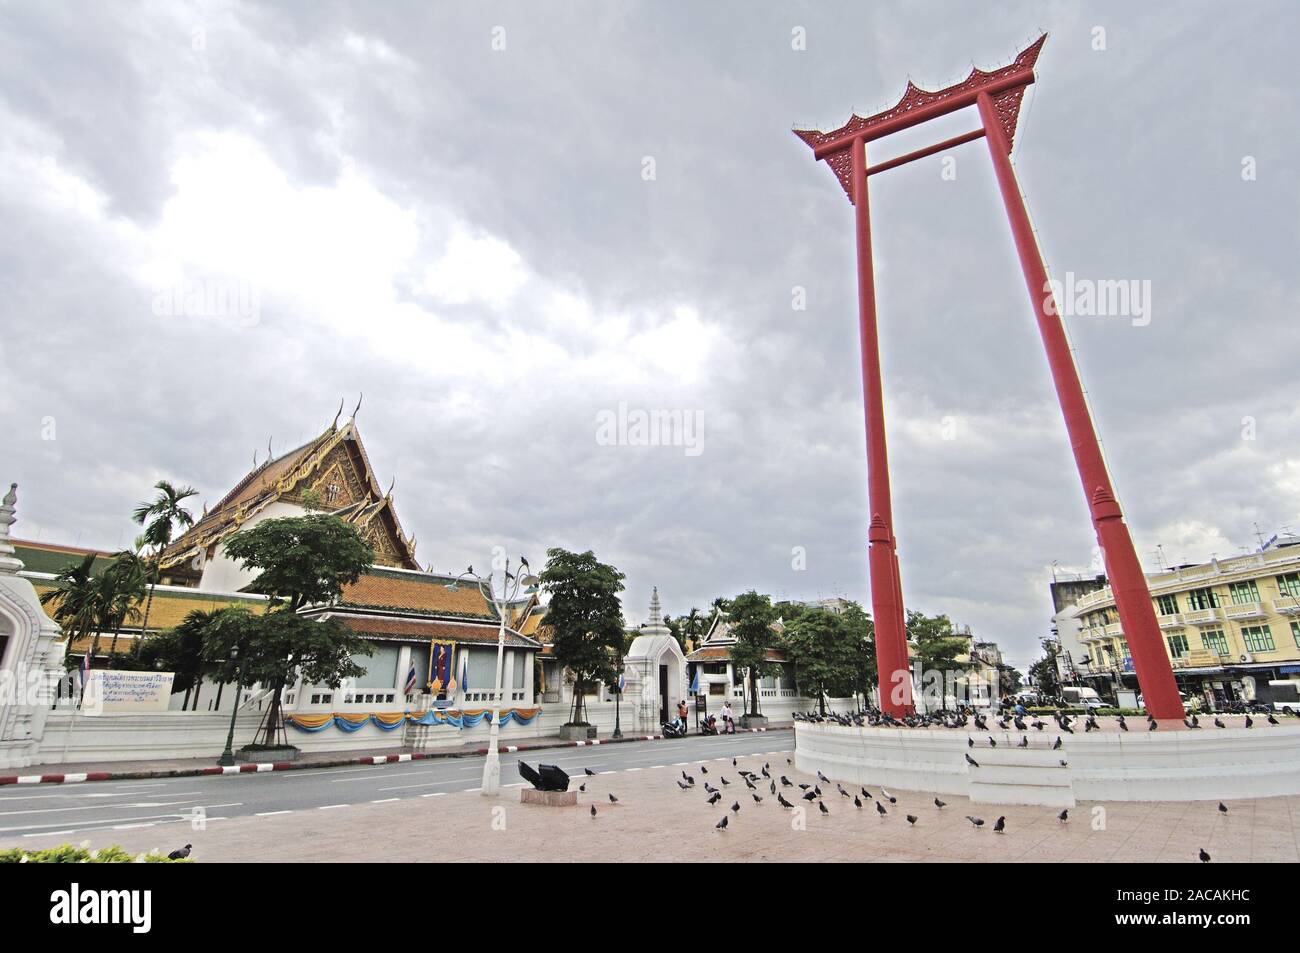 El columpio grande rojo, columpio gigante, Carrozas coloridas y Tuk Tuks en frente, Bangkok, Tailandia, el Sudeste Asiático, Asia Foto de stock